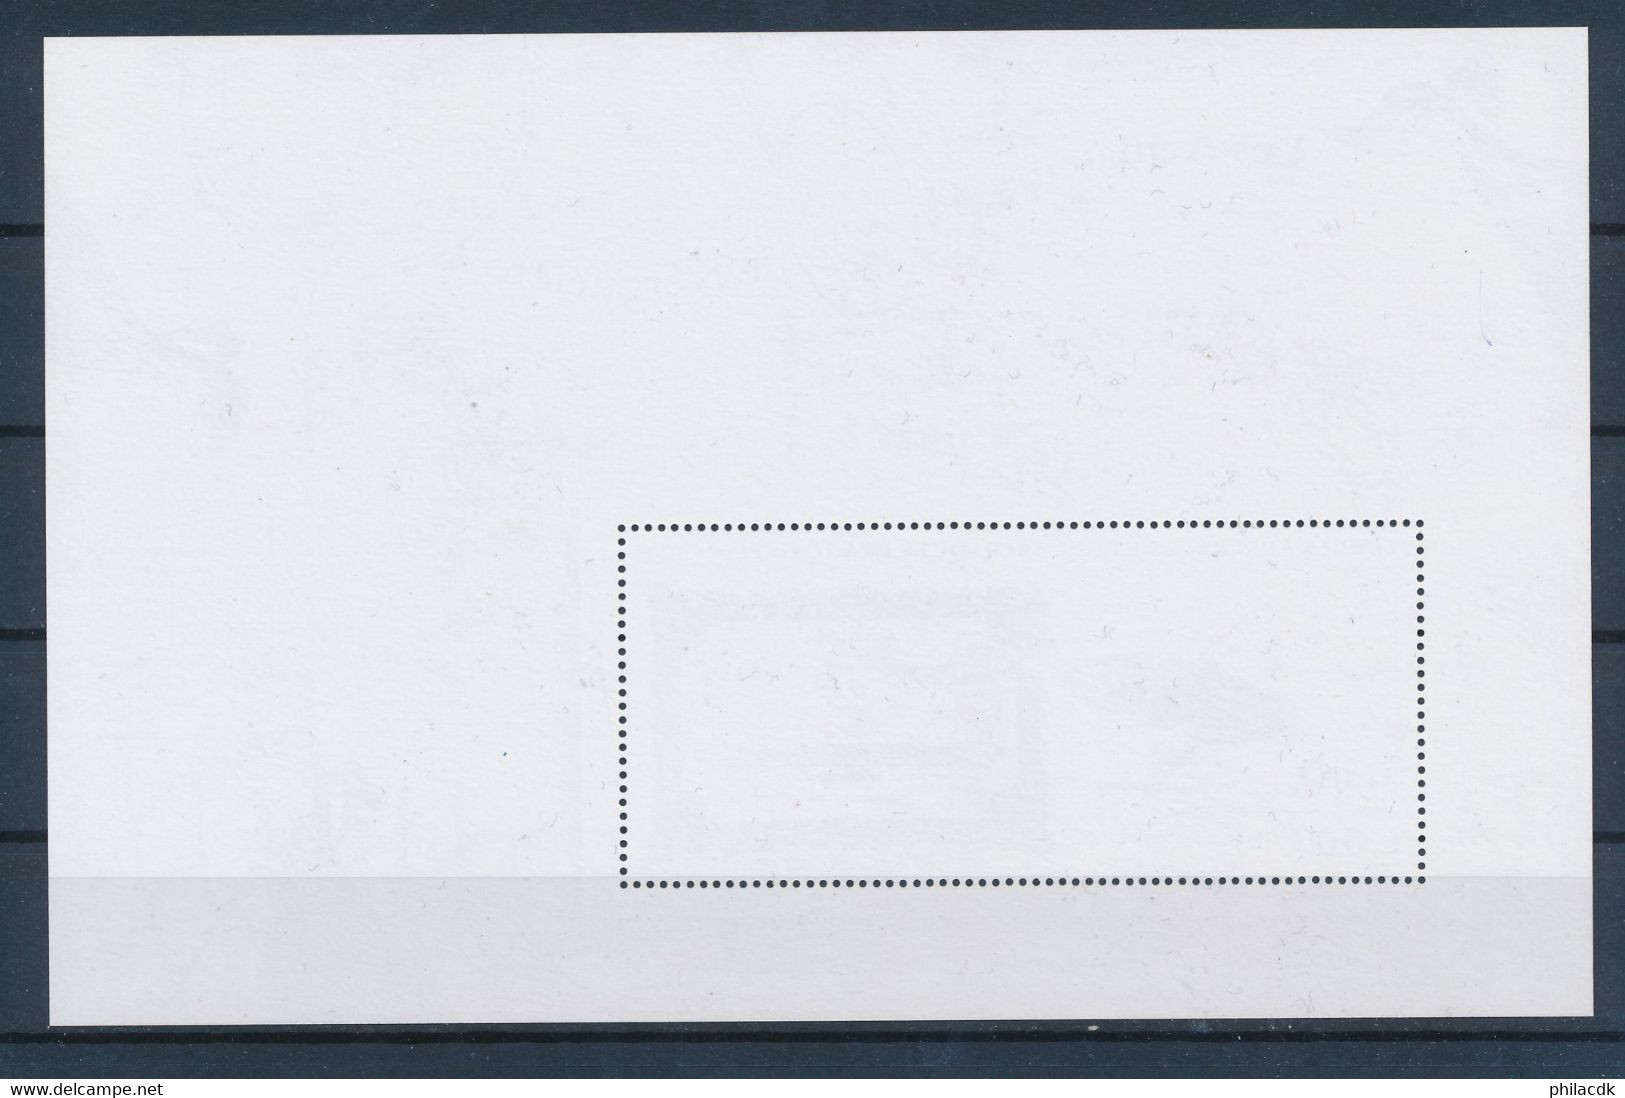 TAAF - FEUILLET N° 685 NEUF** SANS CHARNIERE - 2013 - Unused Stamps